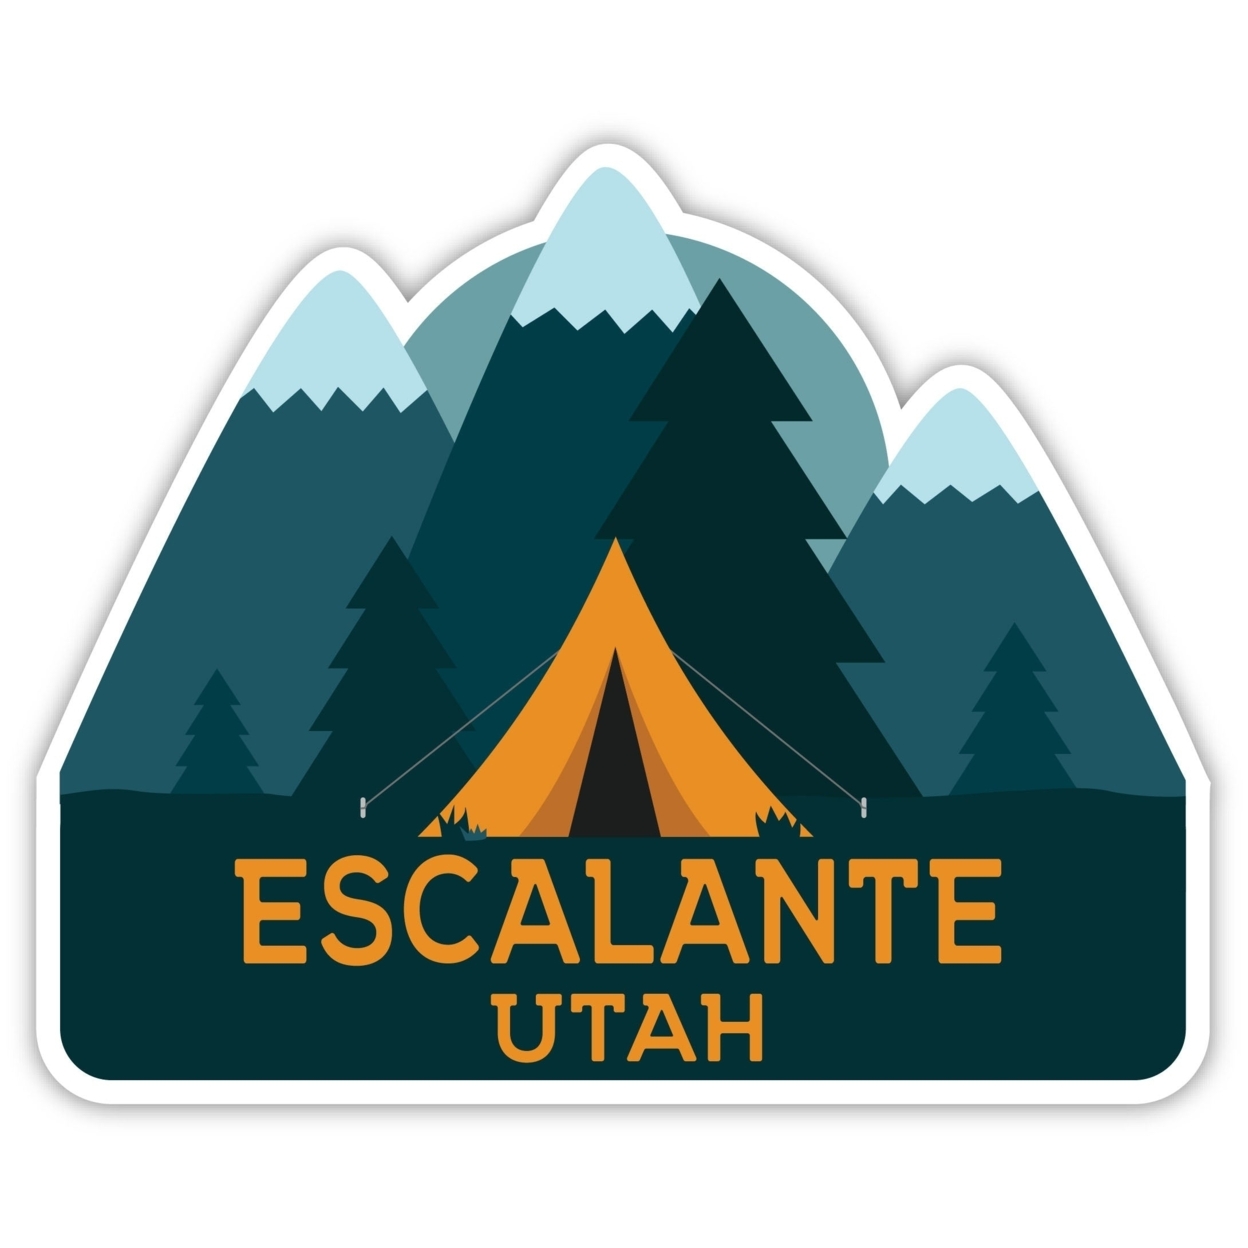 Escalante Utah Souvenir Decorative Stickers (Choose Theme And Size) - Single Unit, 4-Inch, Tent